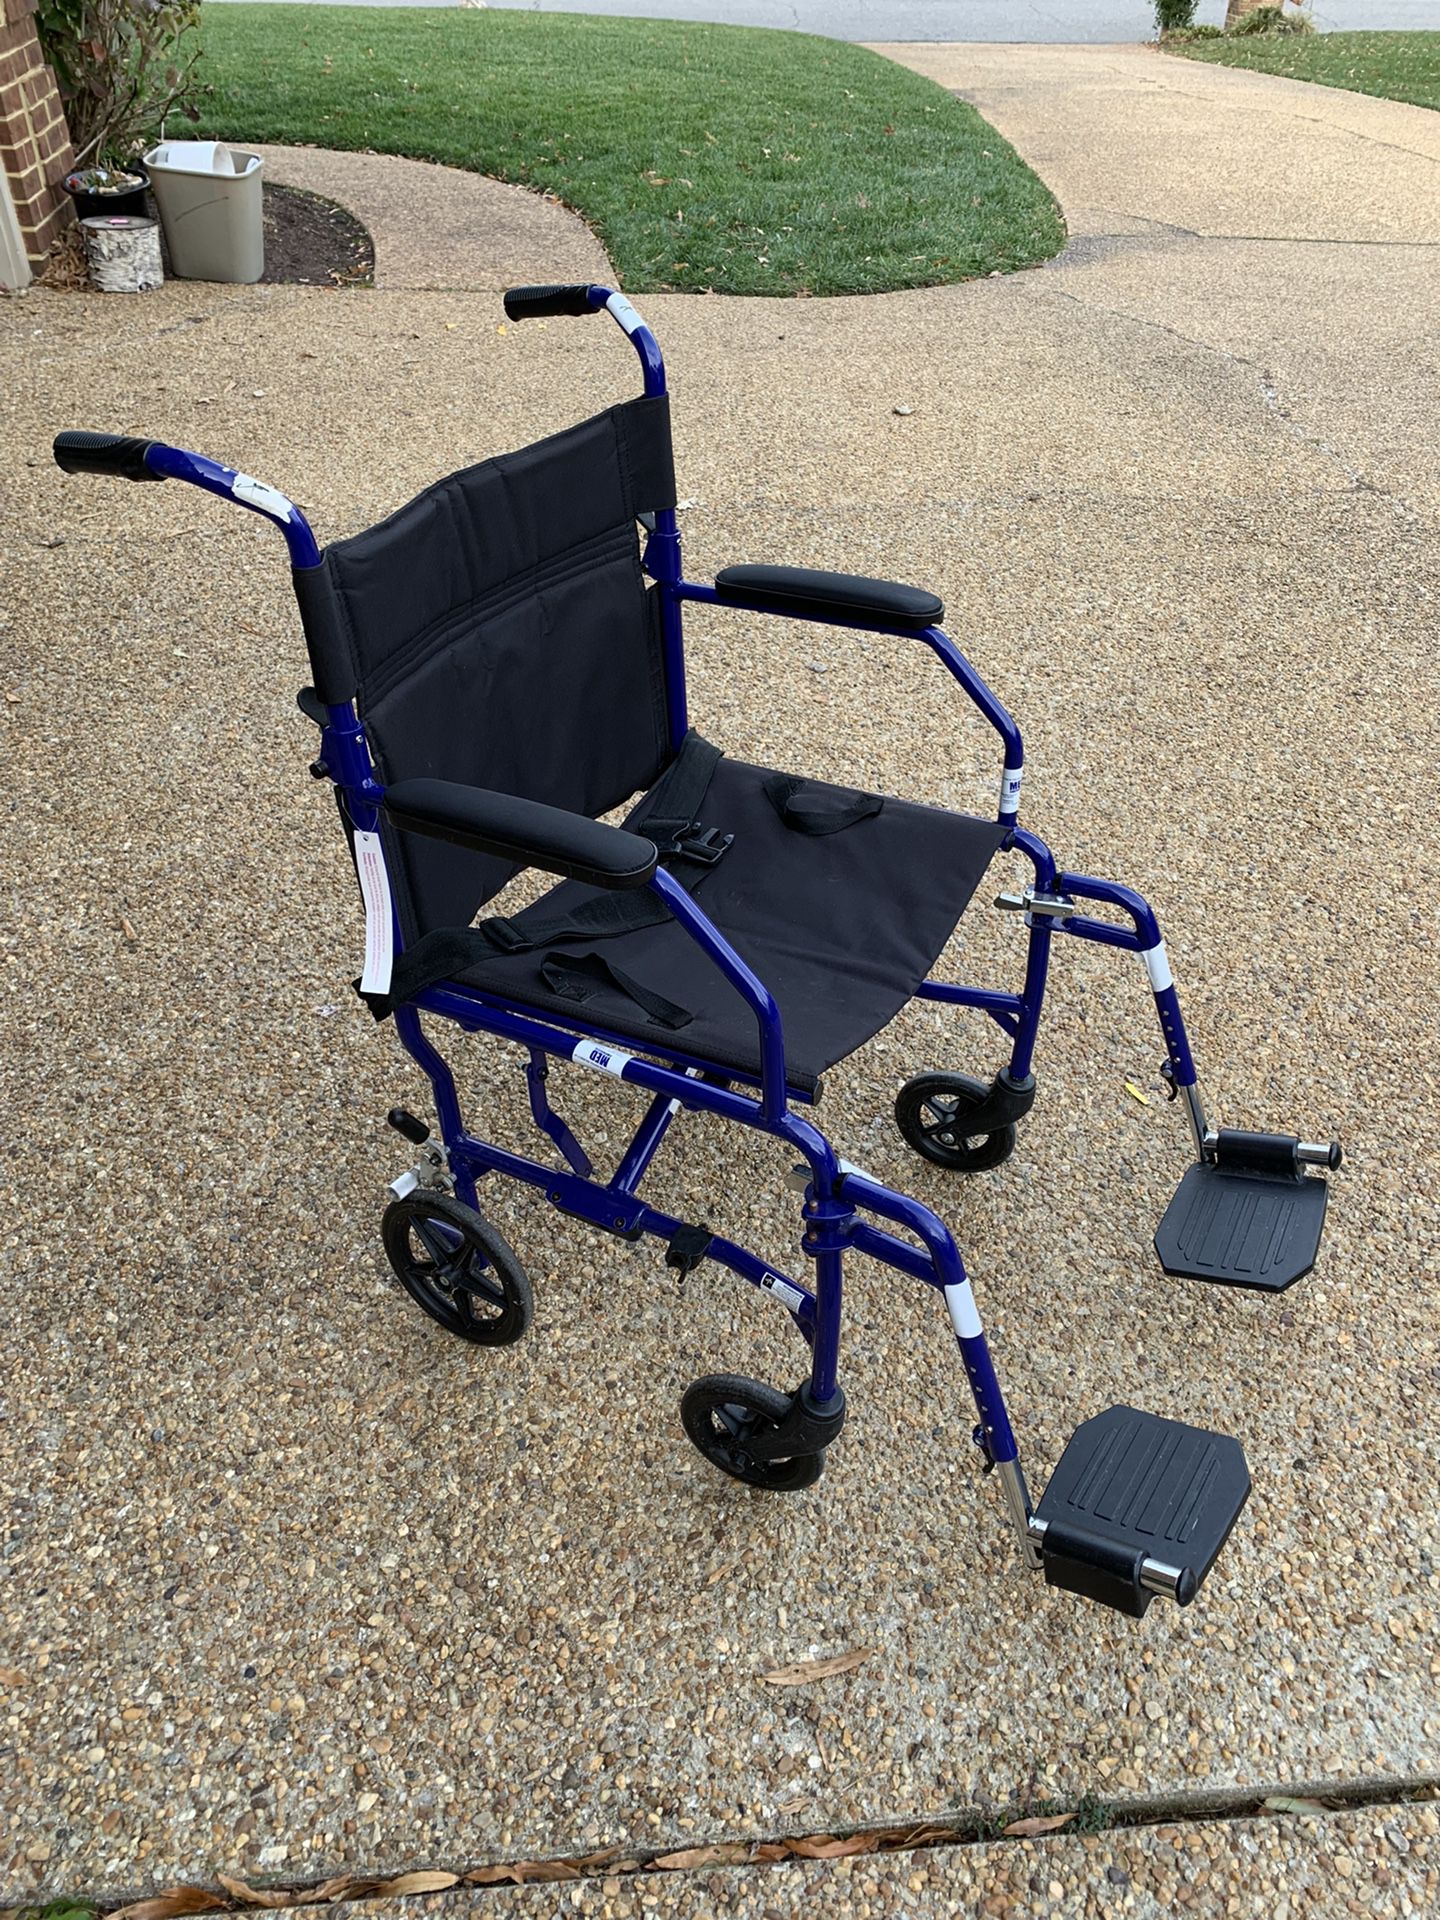 Medline transport wheelchair - Lightweight